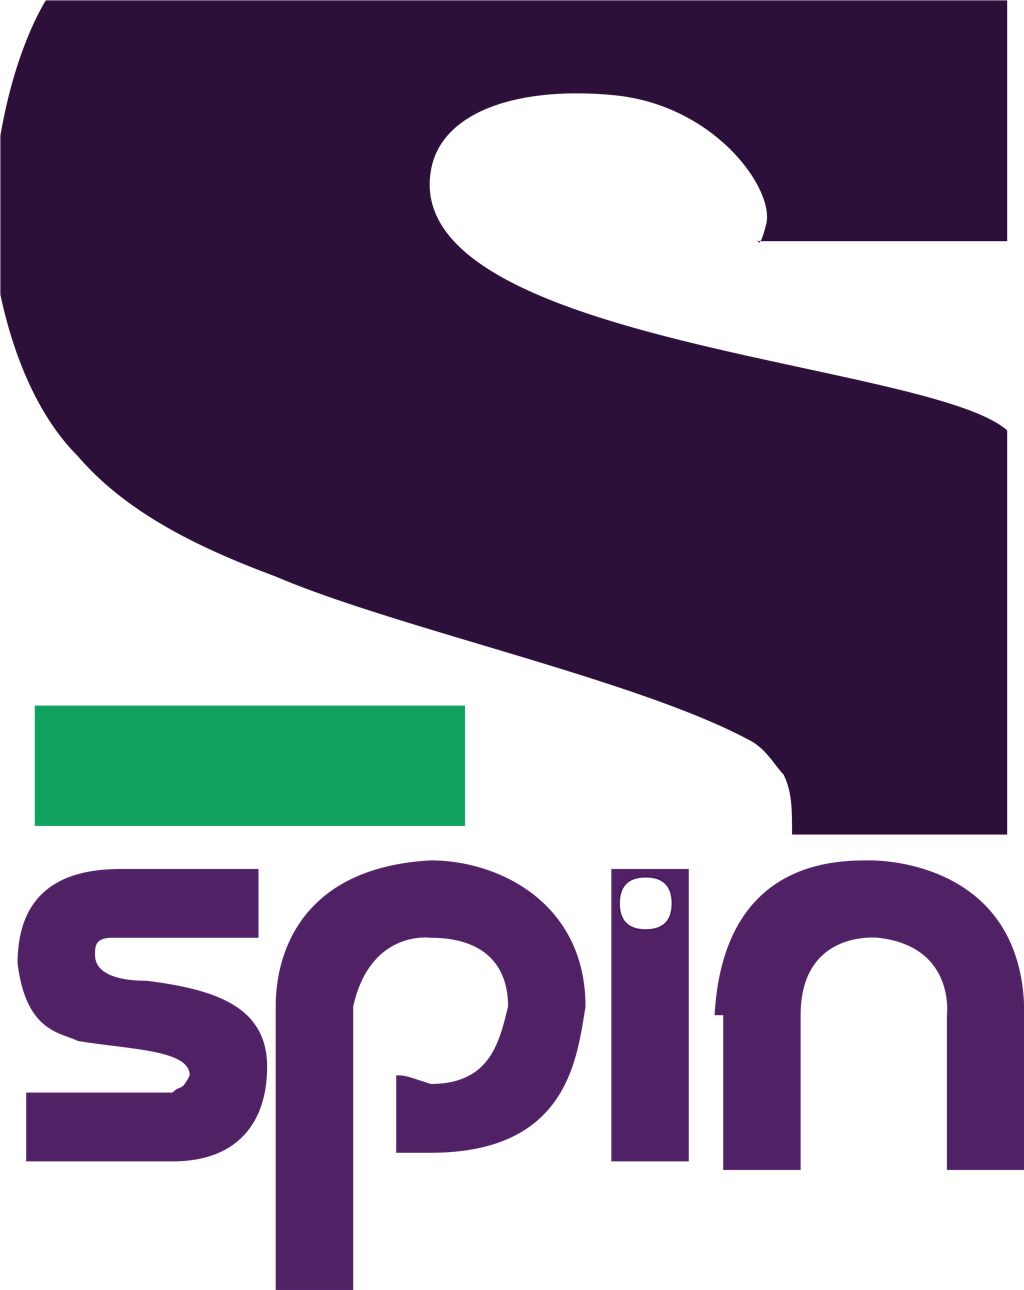 Spin logotype, transparent .png, medium, large